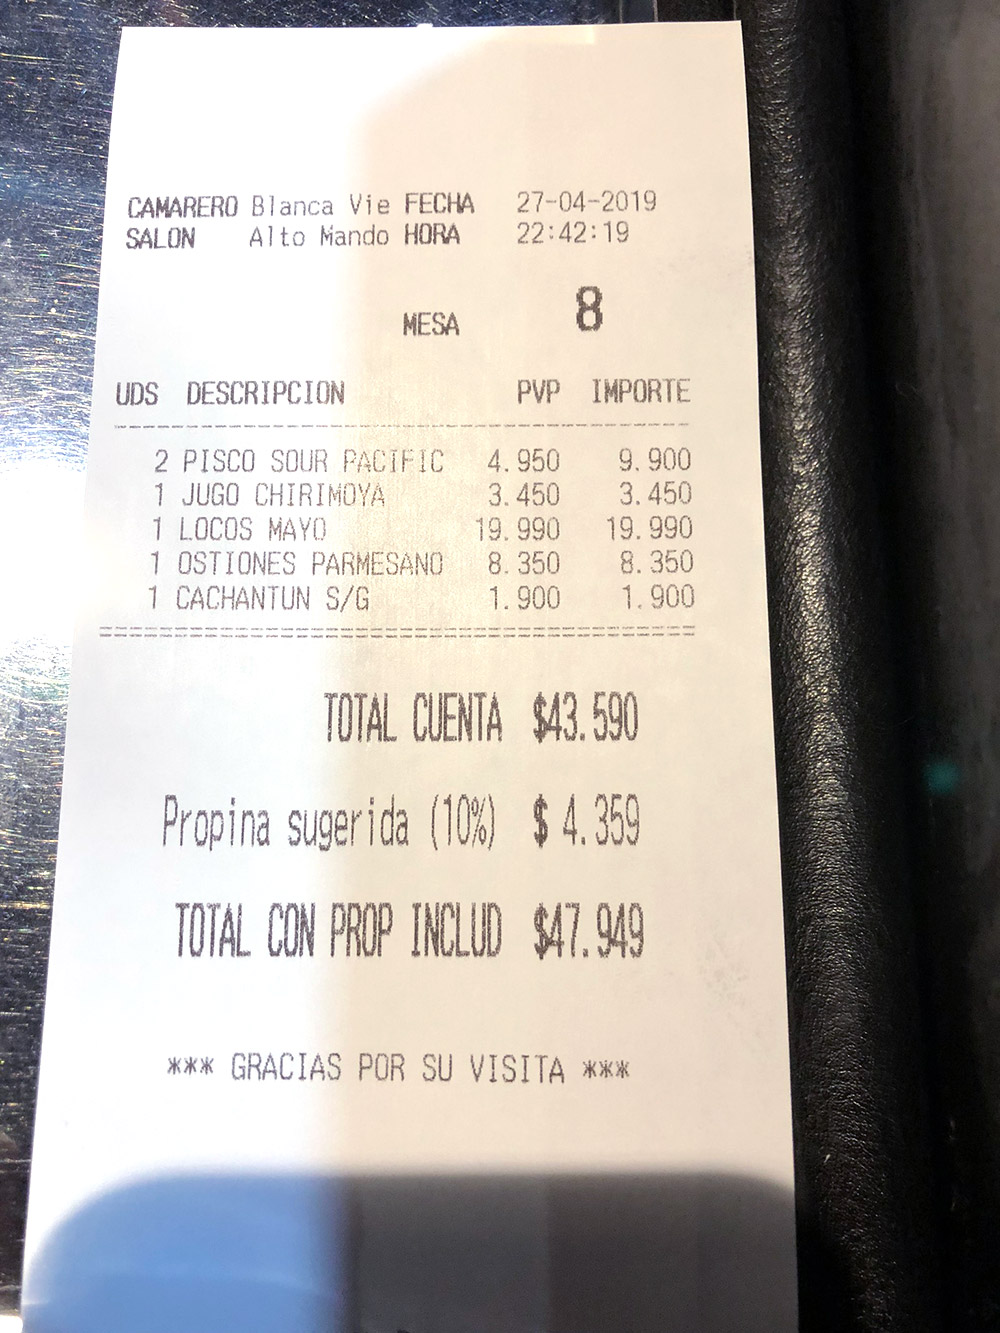 Чек из ресторана: два коктейля «Писко сауэр», сок из черимойи, локос-кон-майо (моллюски под майонезом), устрицы под сыром, бутылка воды — 47 949 песо (3781 ₽) с чаевыми